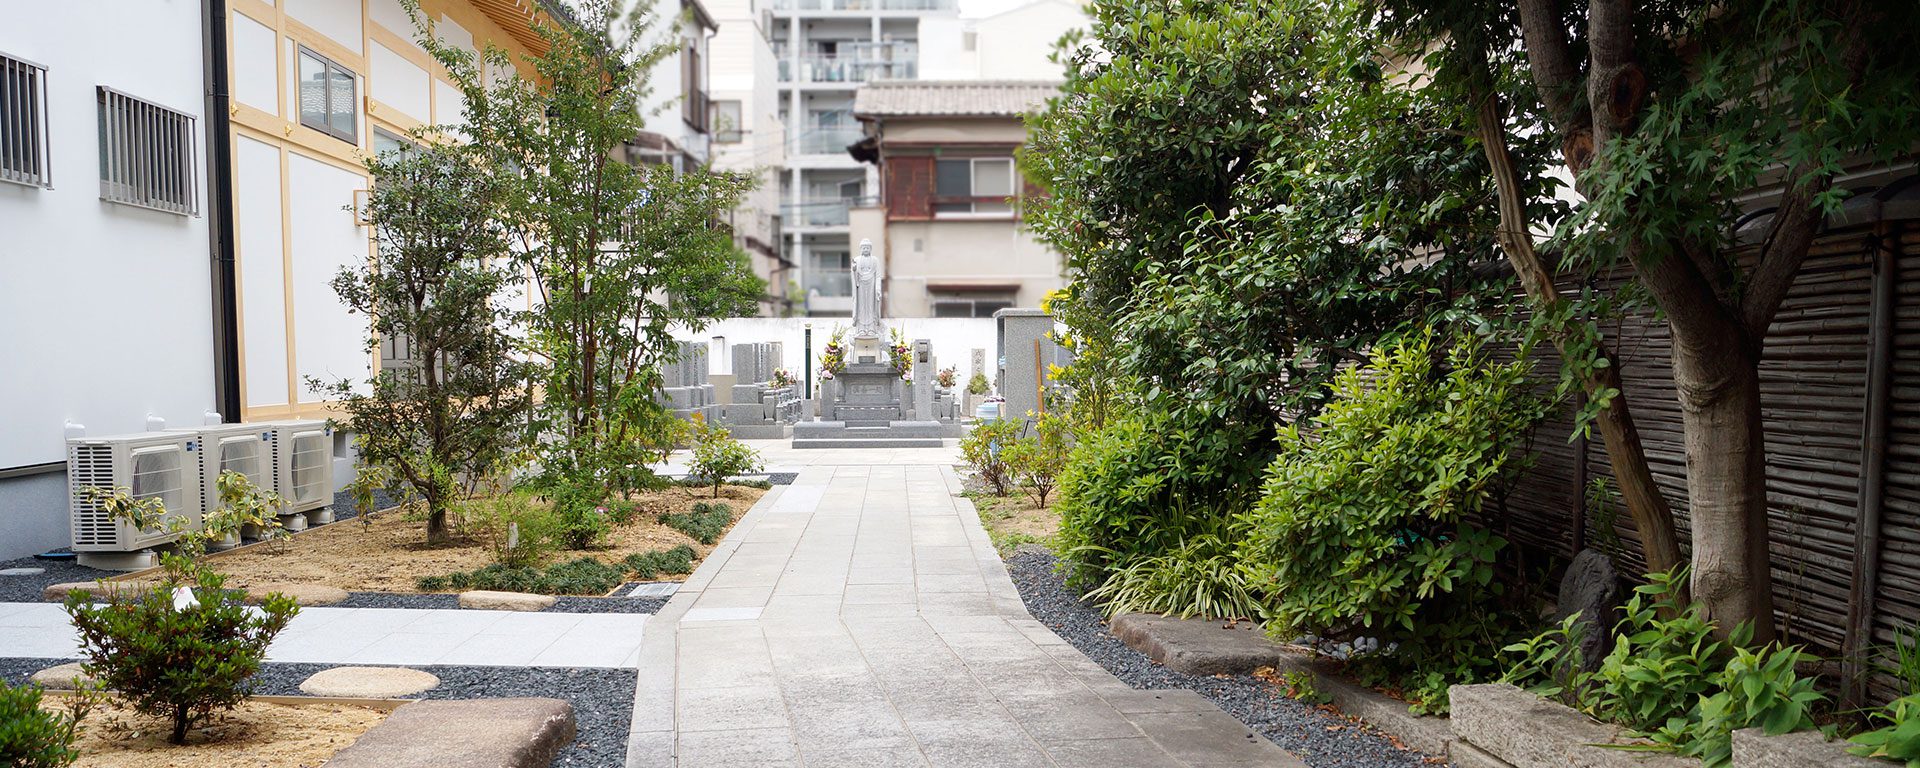 Osaka Metro谷町線中崎町駅より徒歩約7分のアクセス便利な寺院墓地